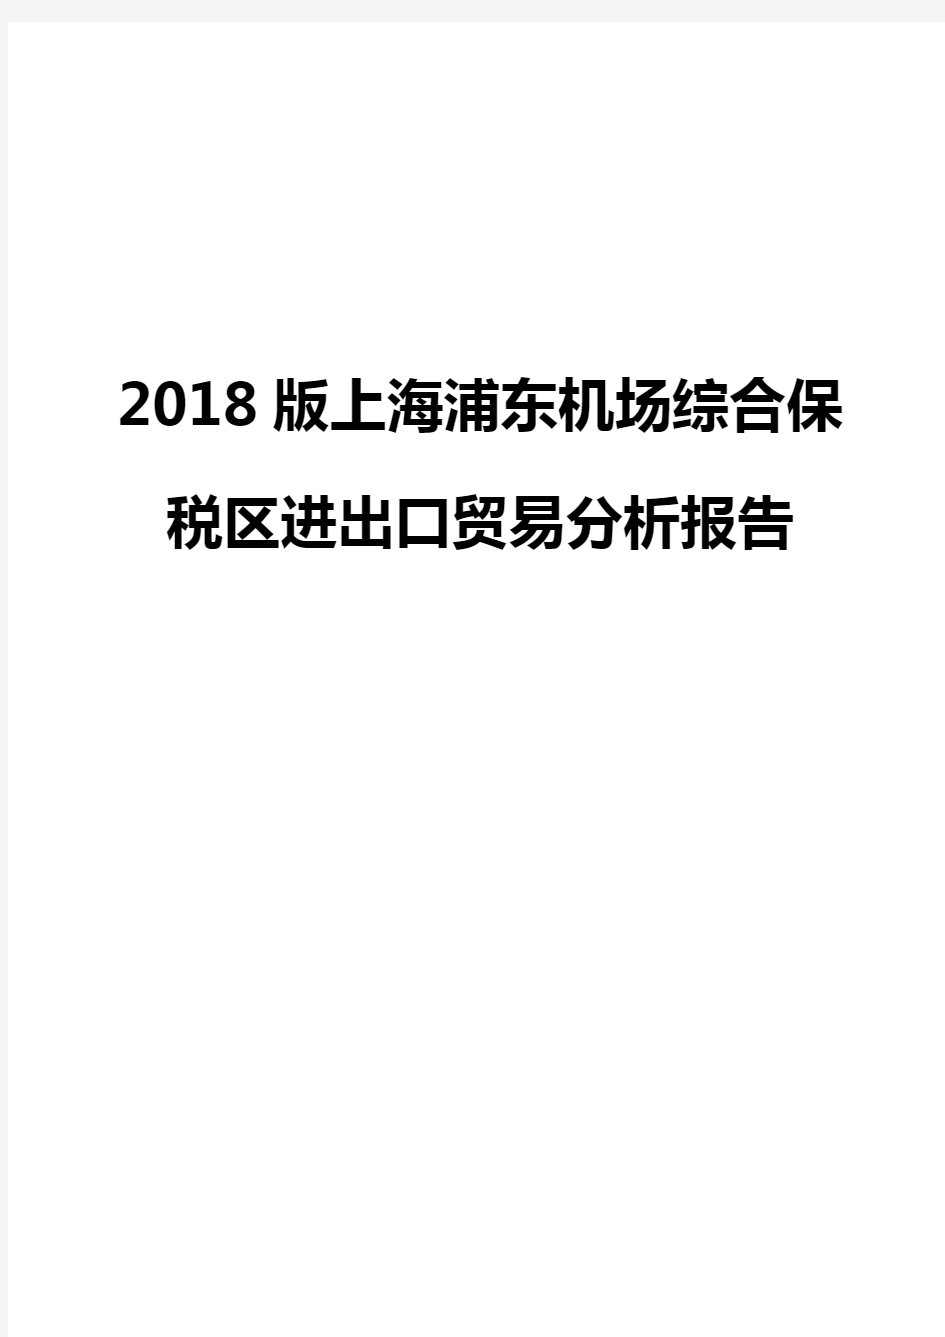 2018版上海浦东机场综合保税区进出口贸易分析报告